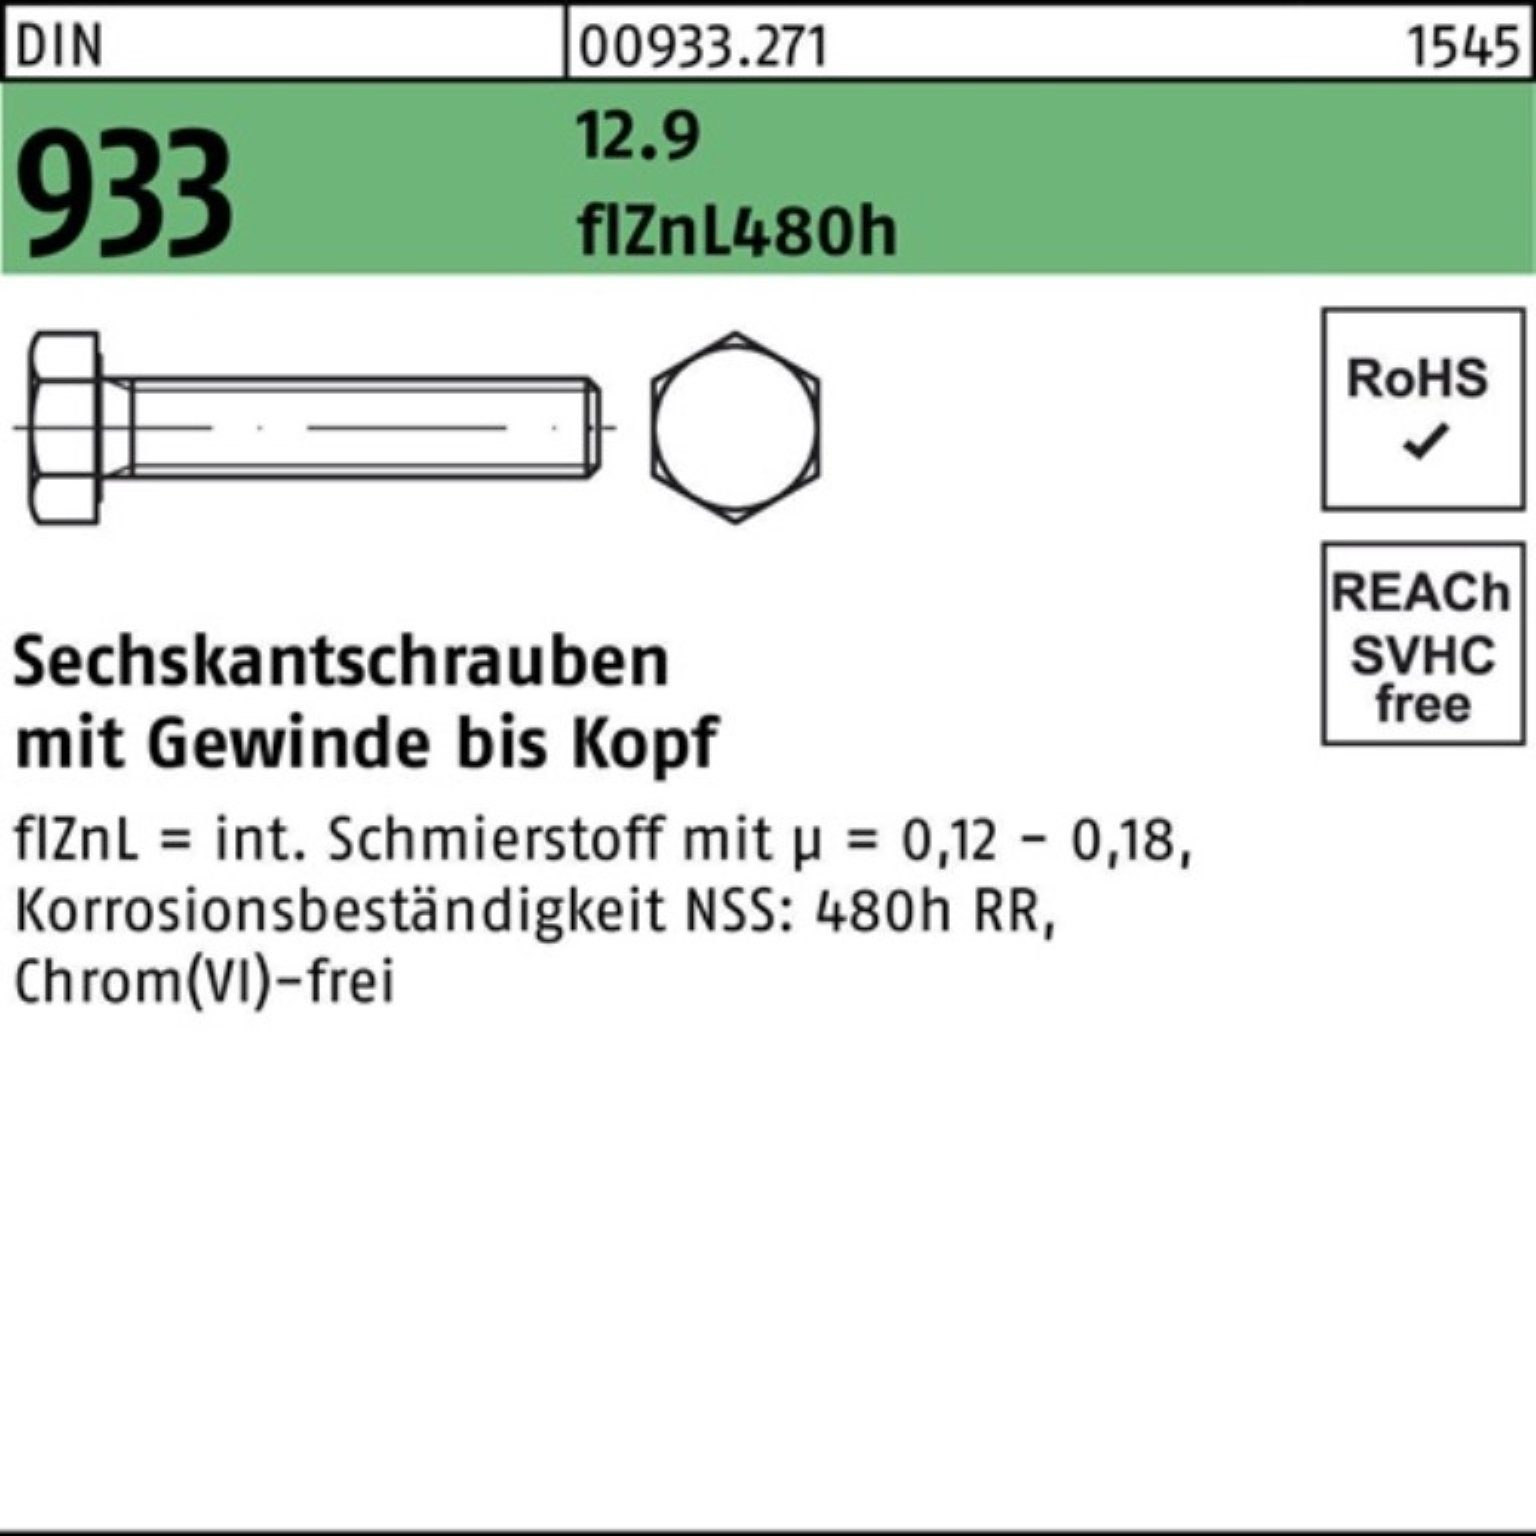 Reyher VG M6x zinklam flZnL DIN Sechskantschraube Sechskantschraube 500er 480h Pack 933 12.9 25